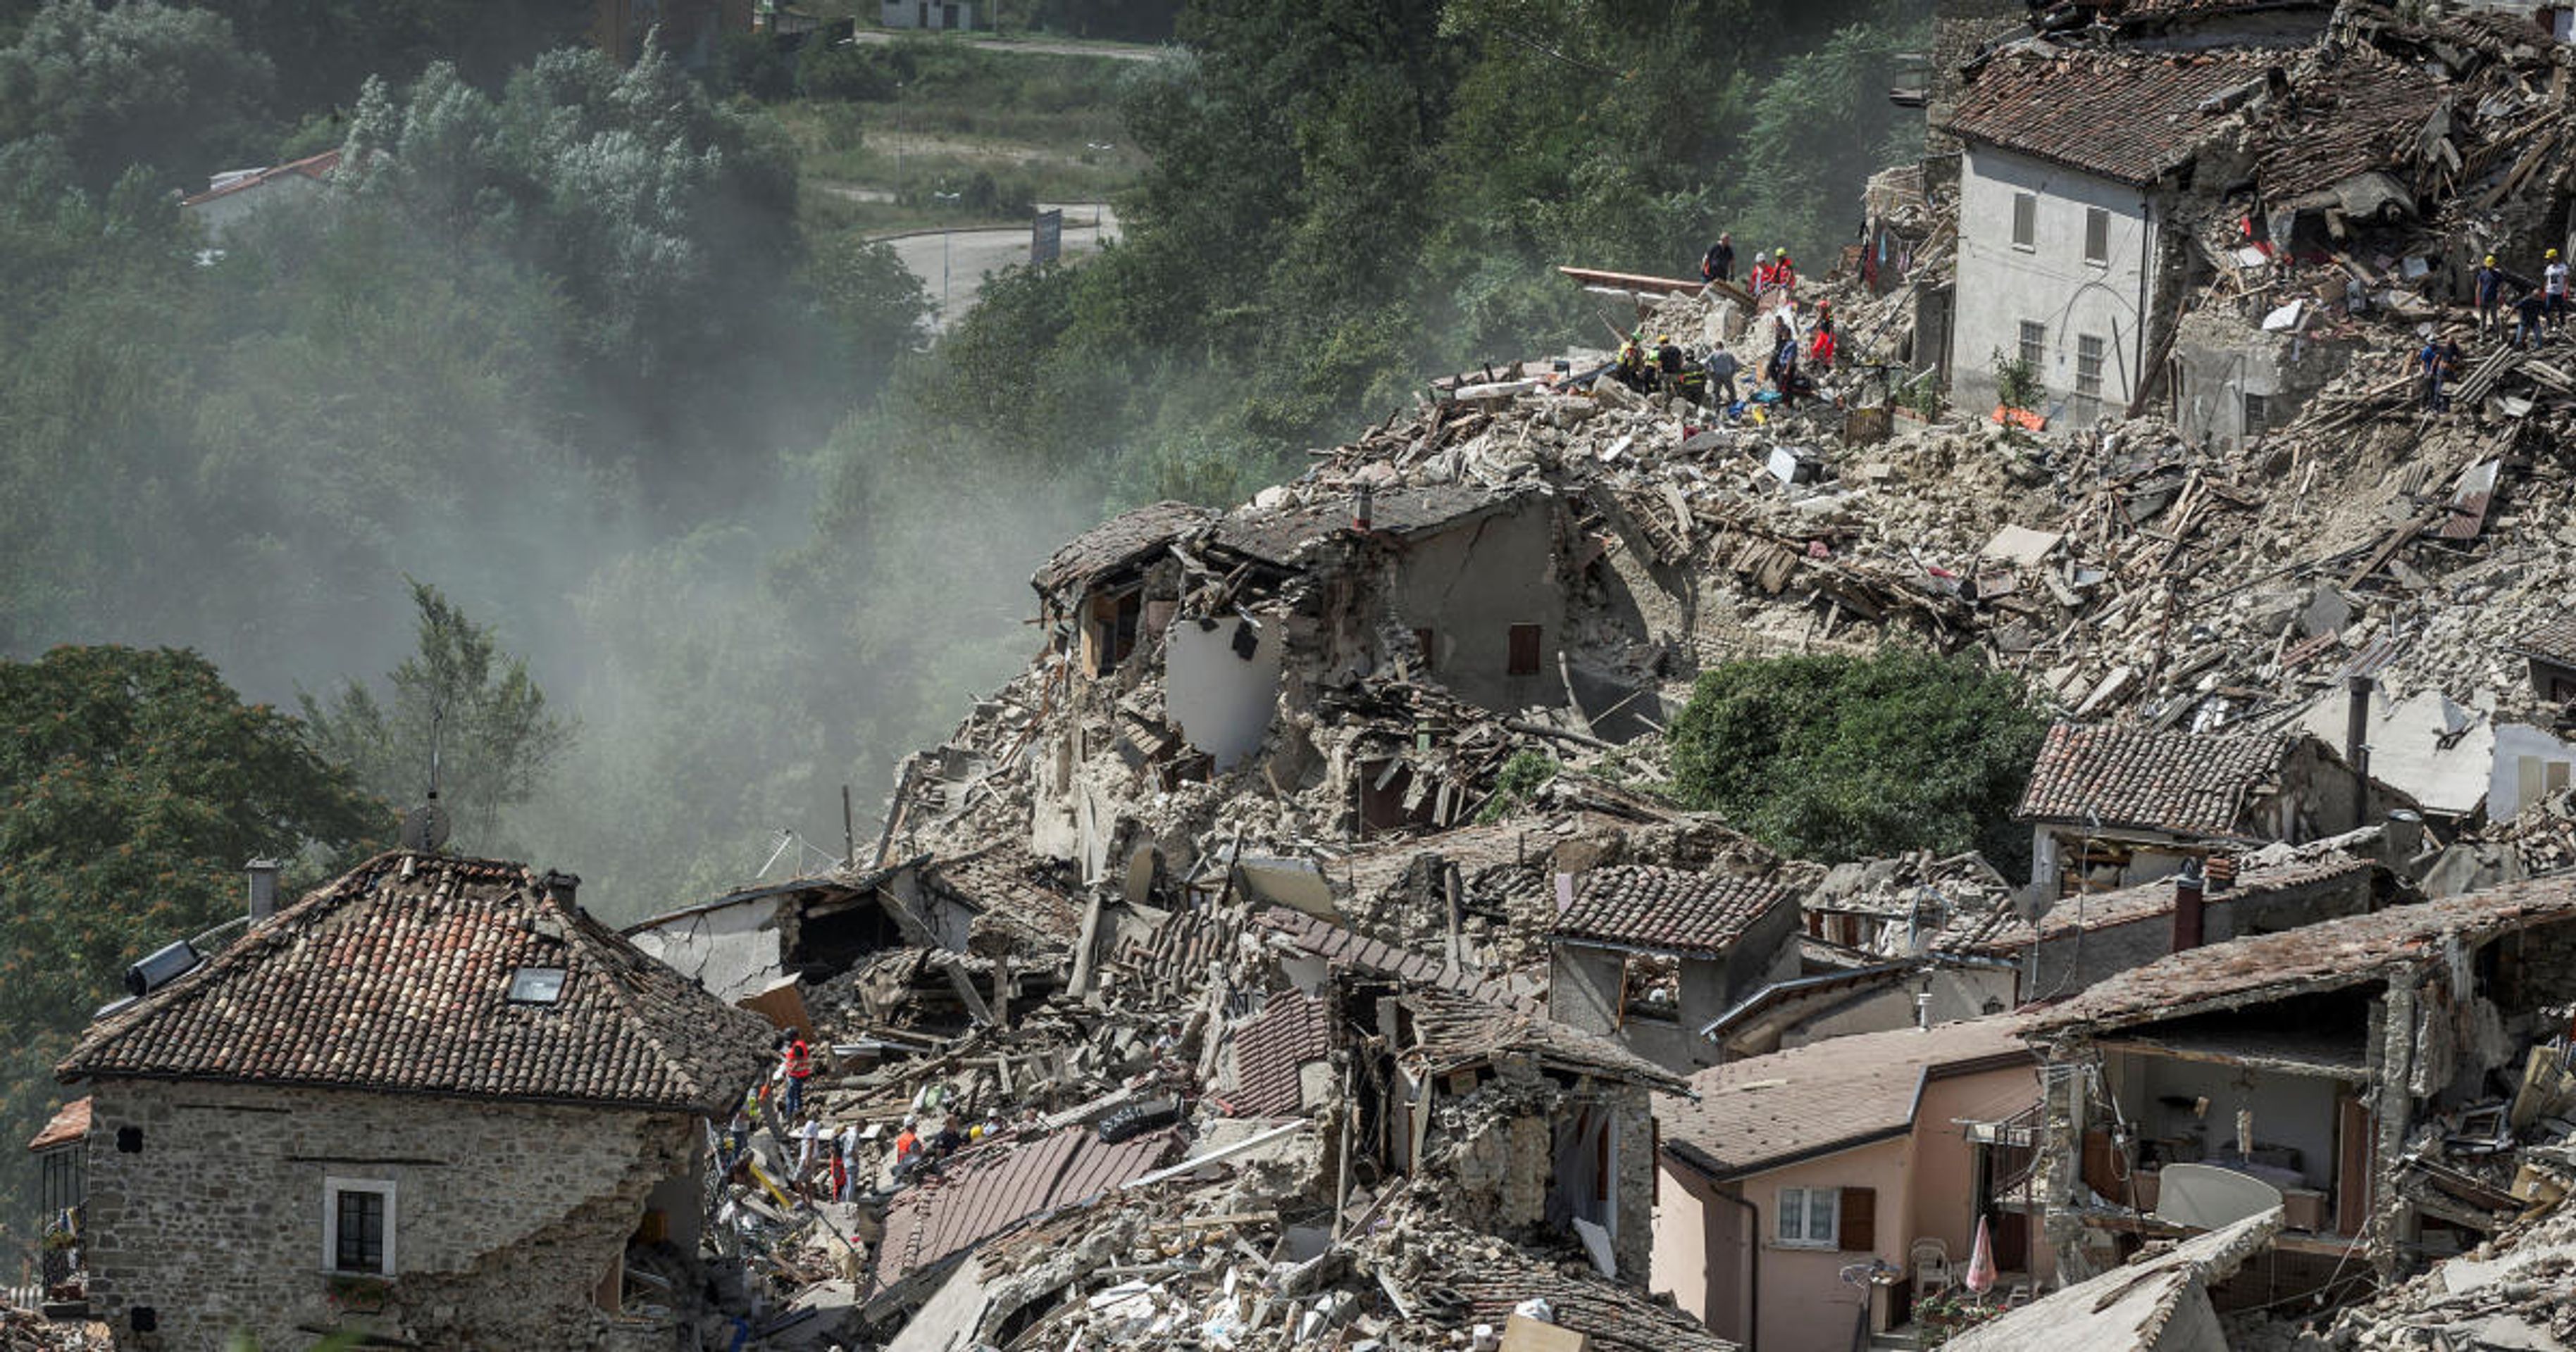 LaFerrari - 12 - GALERIE: LaFerrari přispěje na zemětřesení v Itálii (5/8)